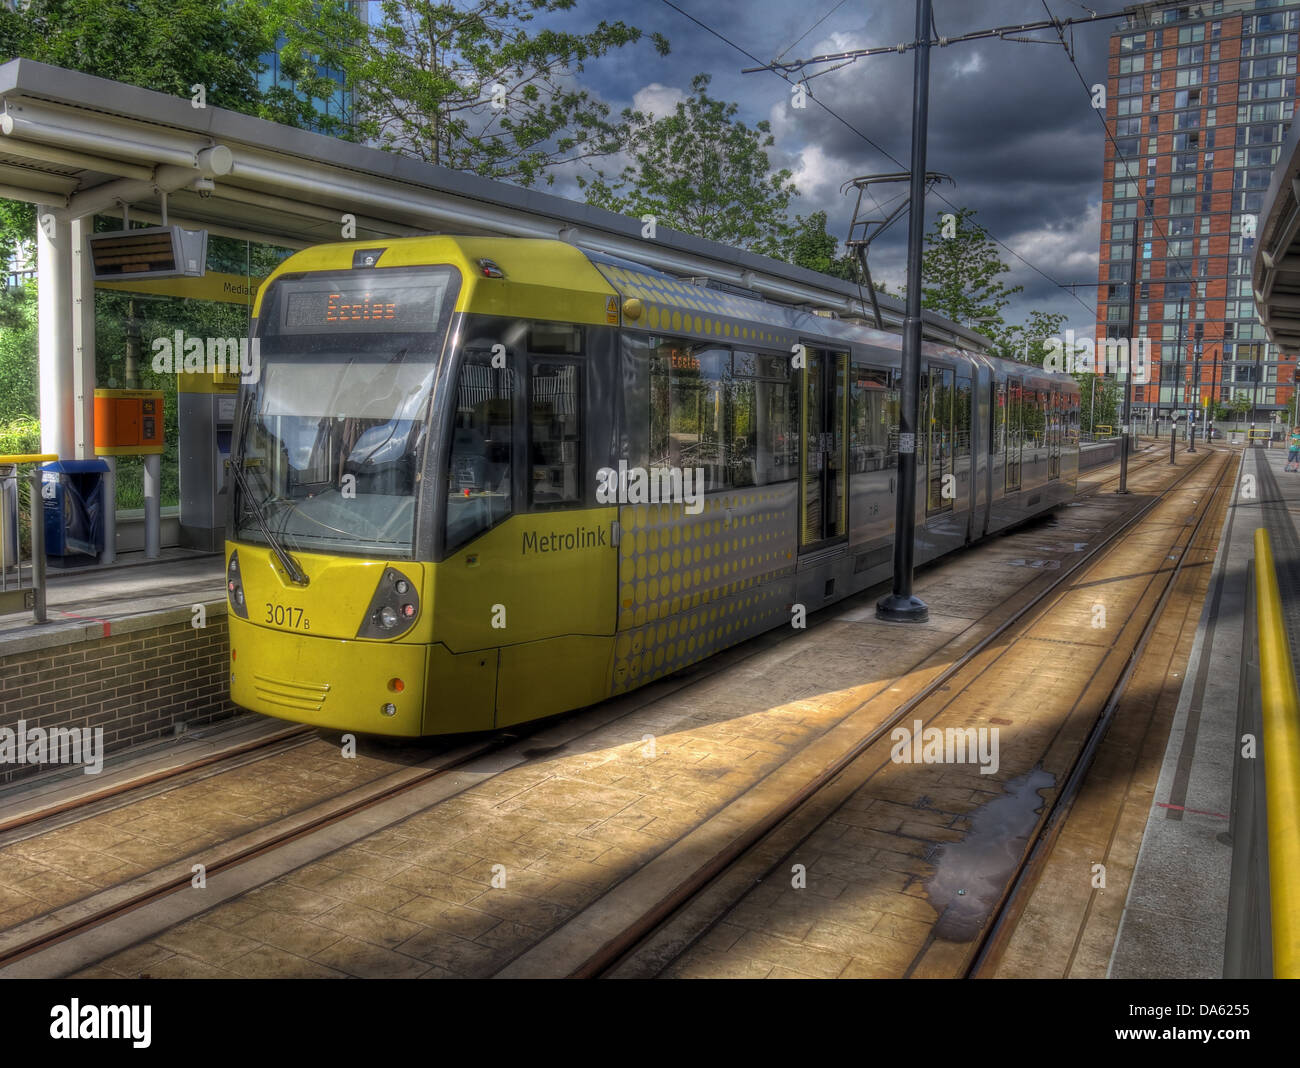 Gelben Straßenbahn an der Medienstadt Metrolink Station, Salford Quays, Manchester, England UK Stockfoto